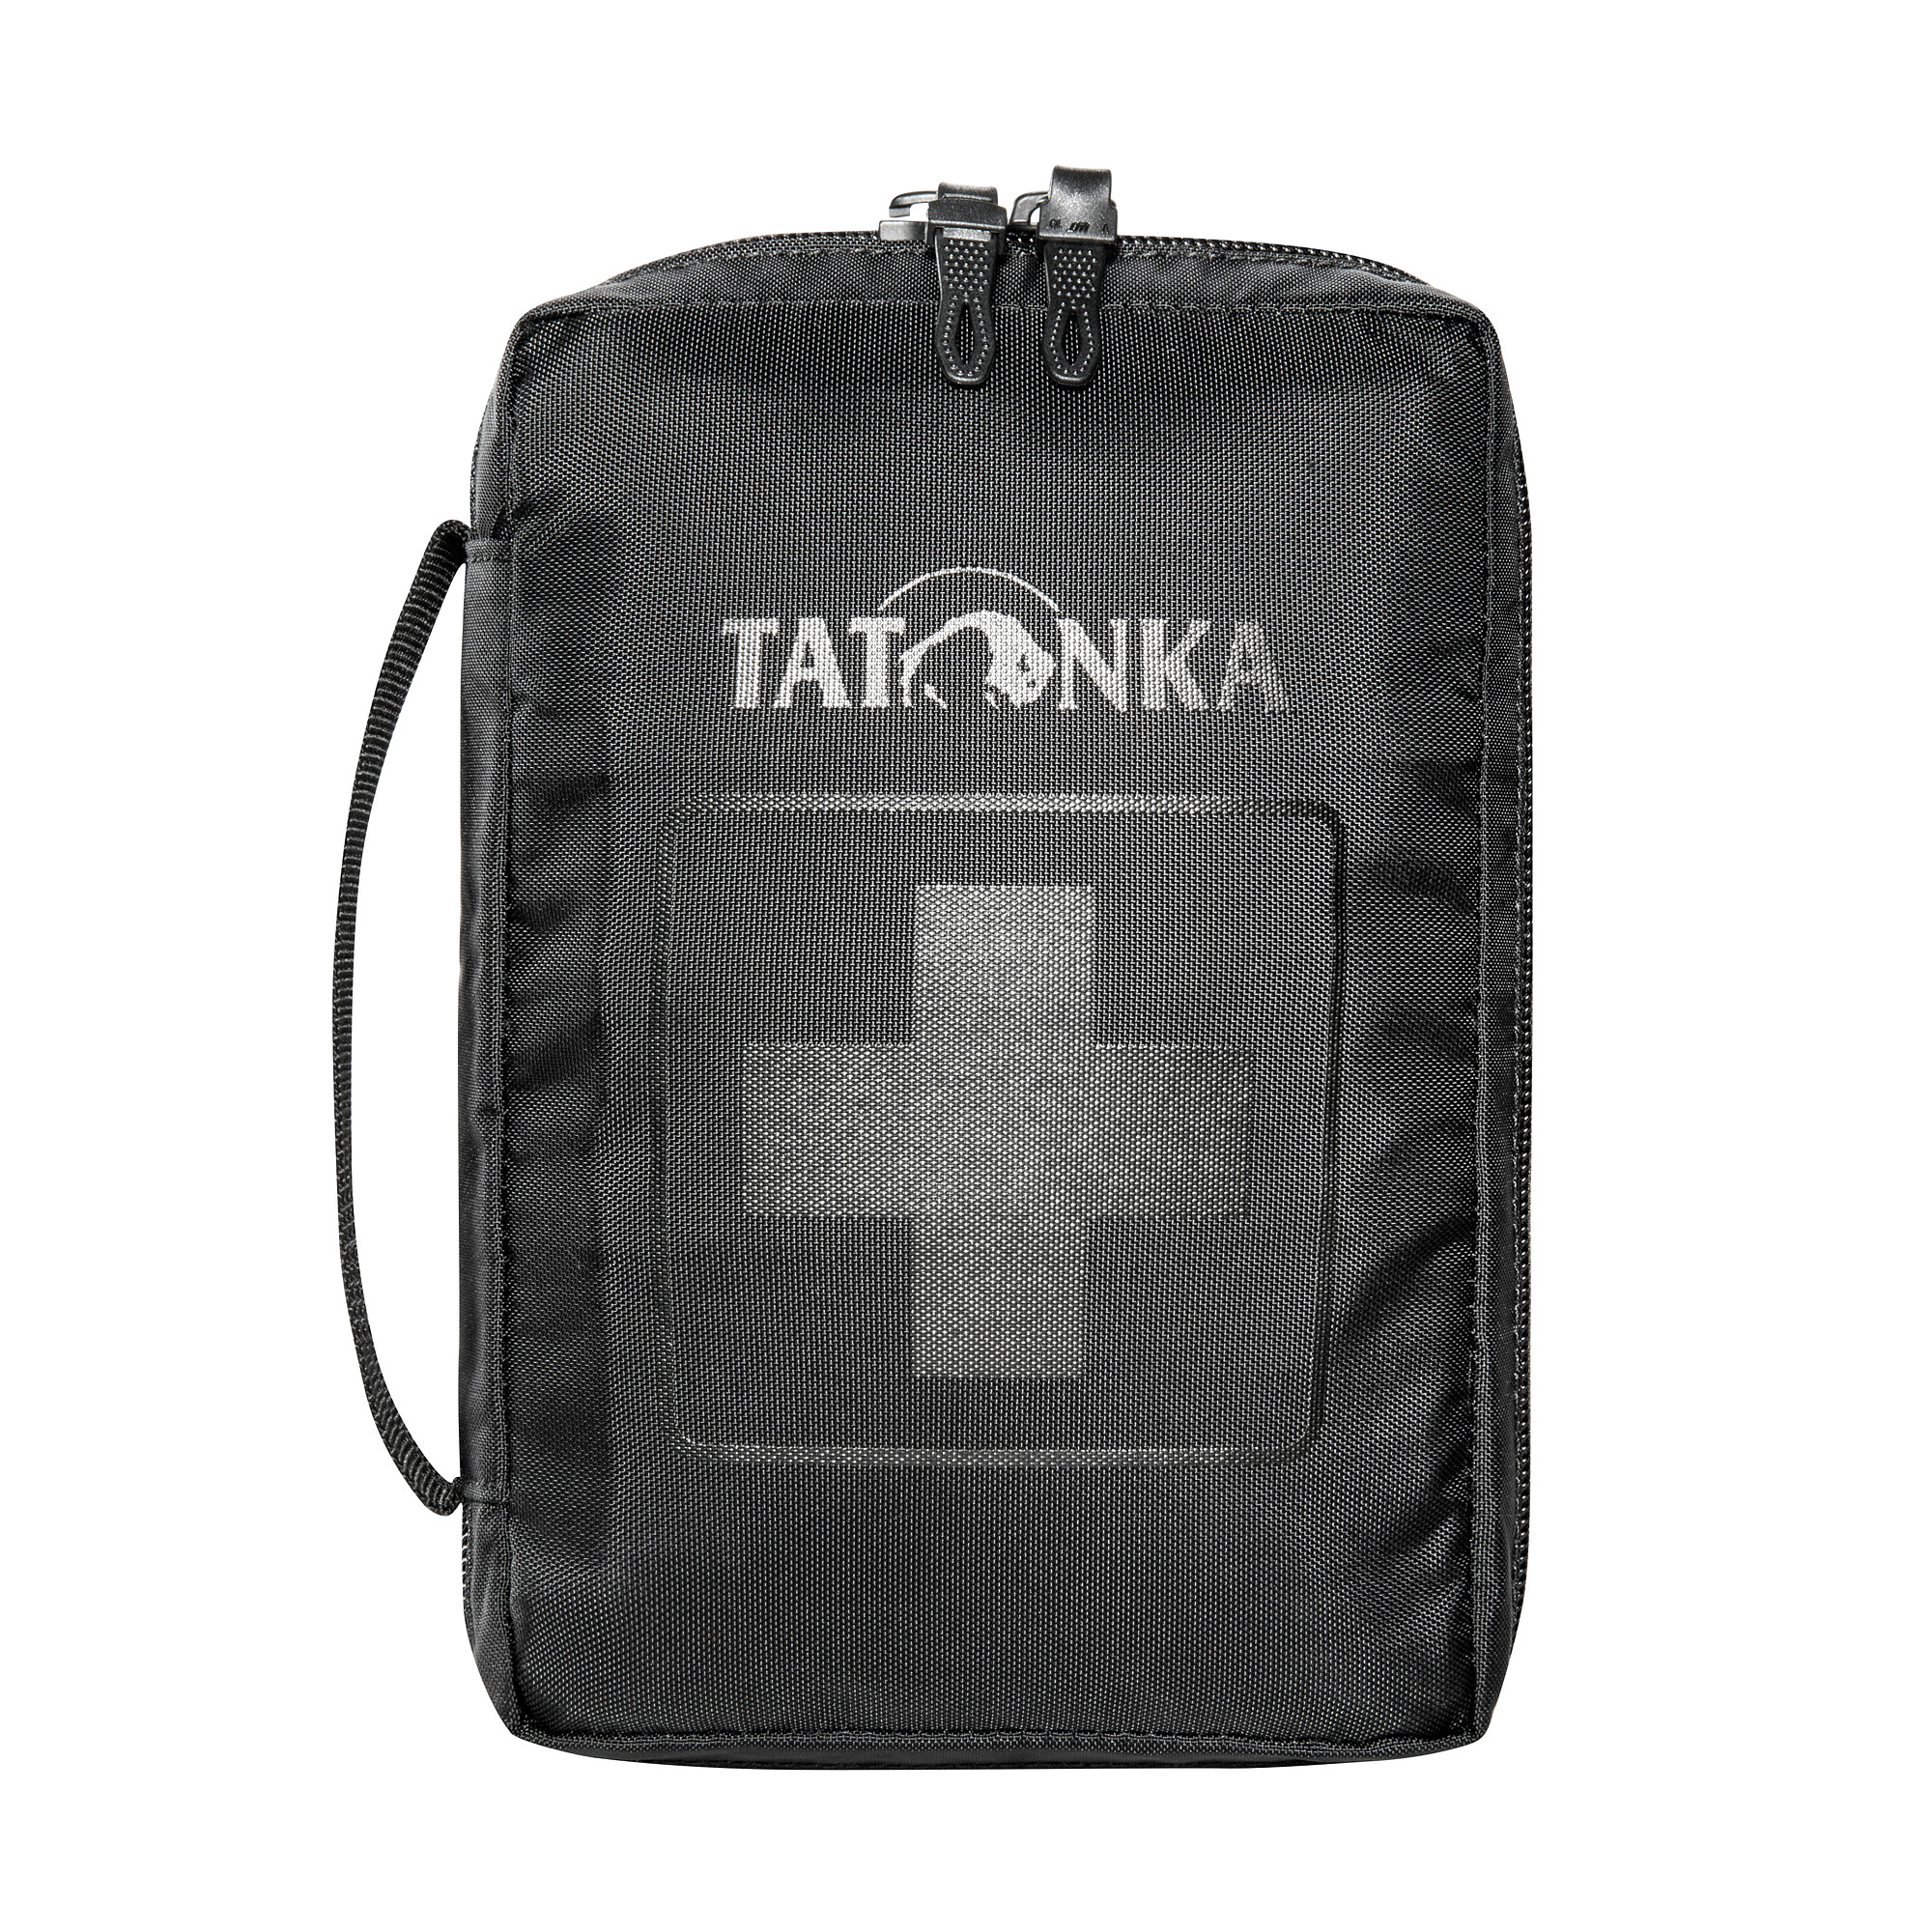 Tatonka First Aid "S" black schwarz Erste-Hilfe-Rucksäcke /-taschen 4013236335859